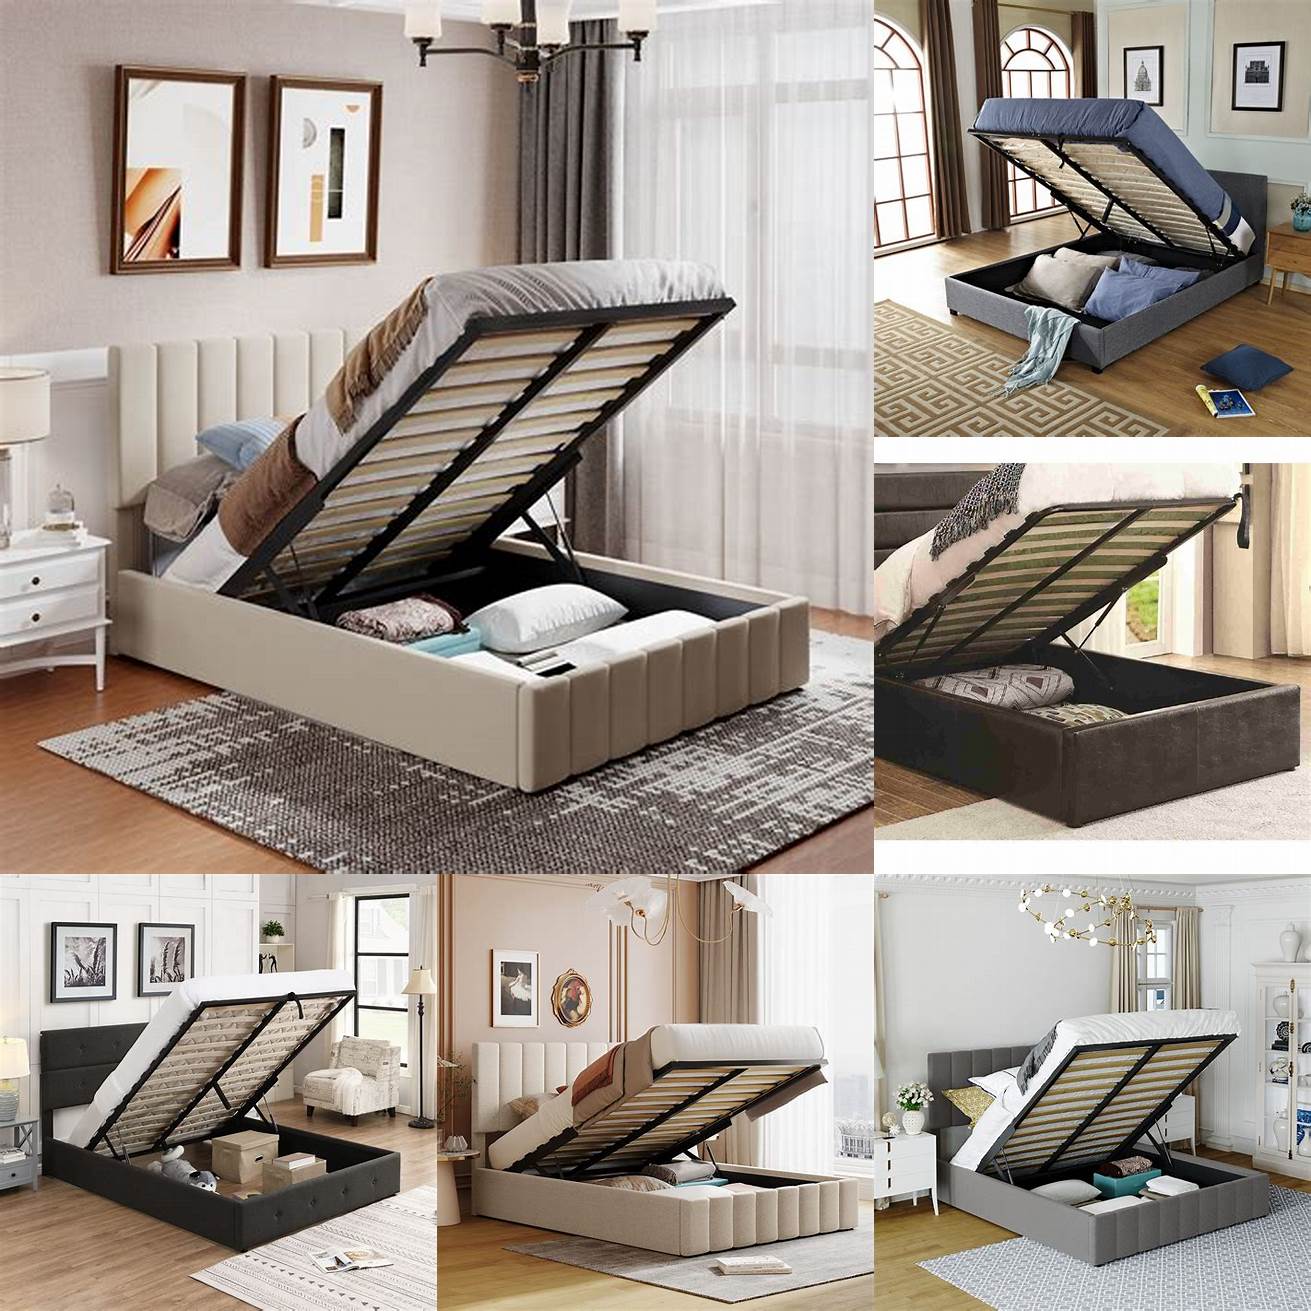 Platform bed storage with lift-up mattress